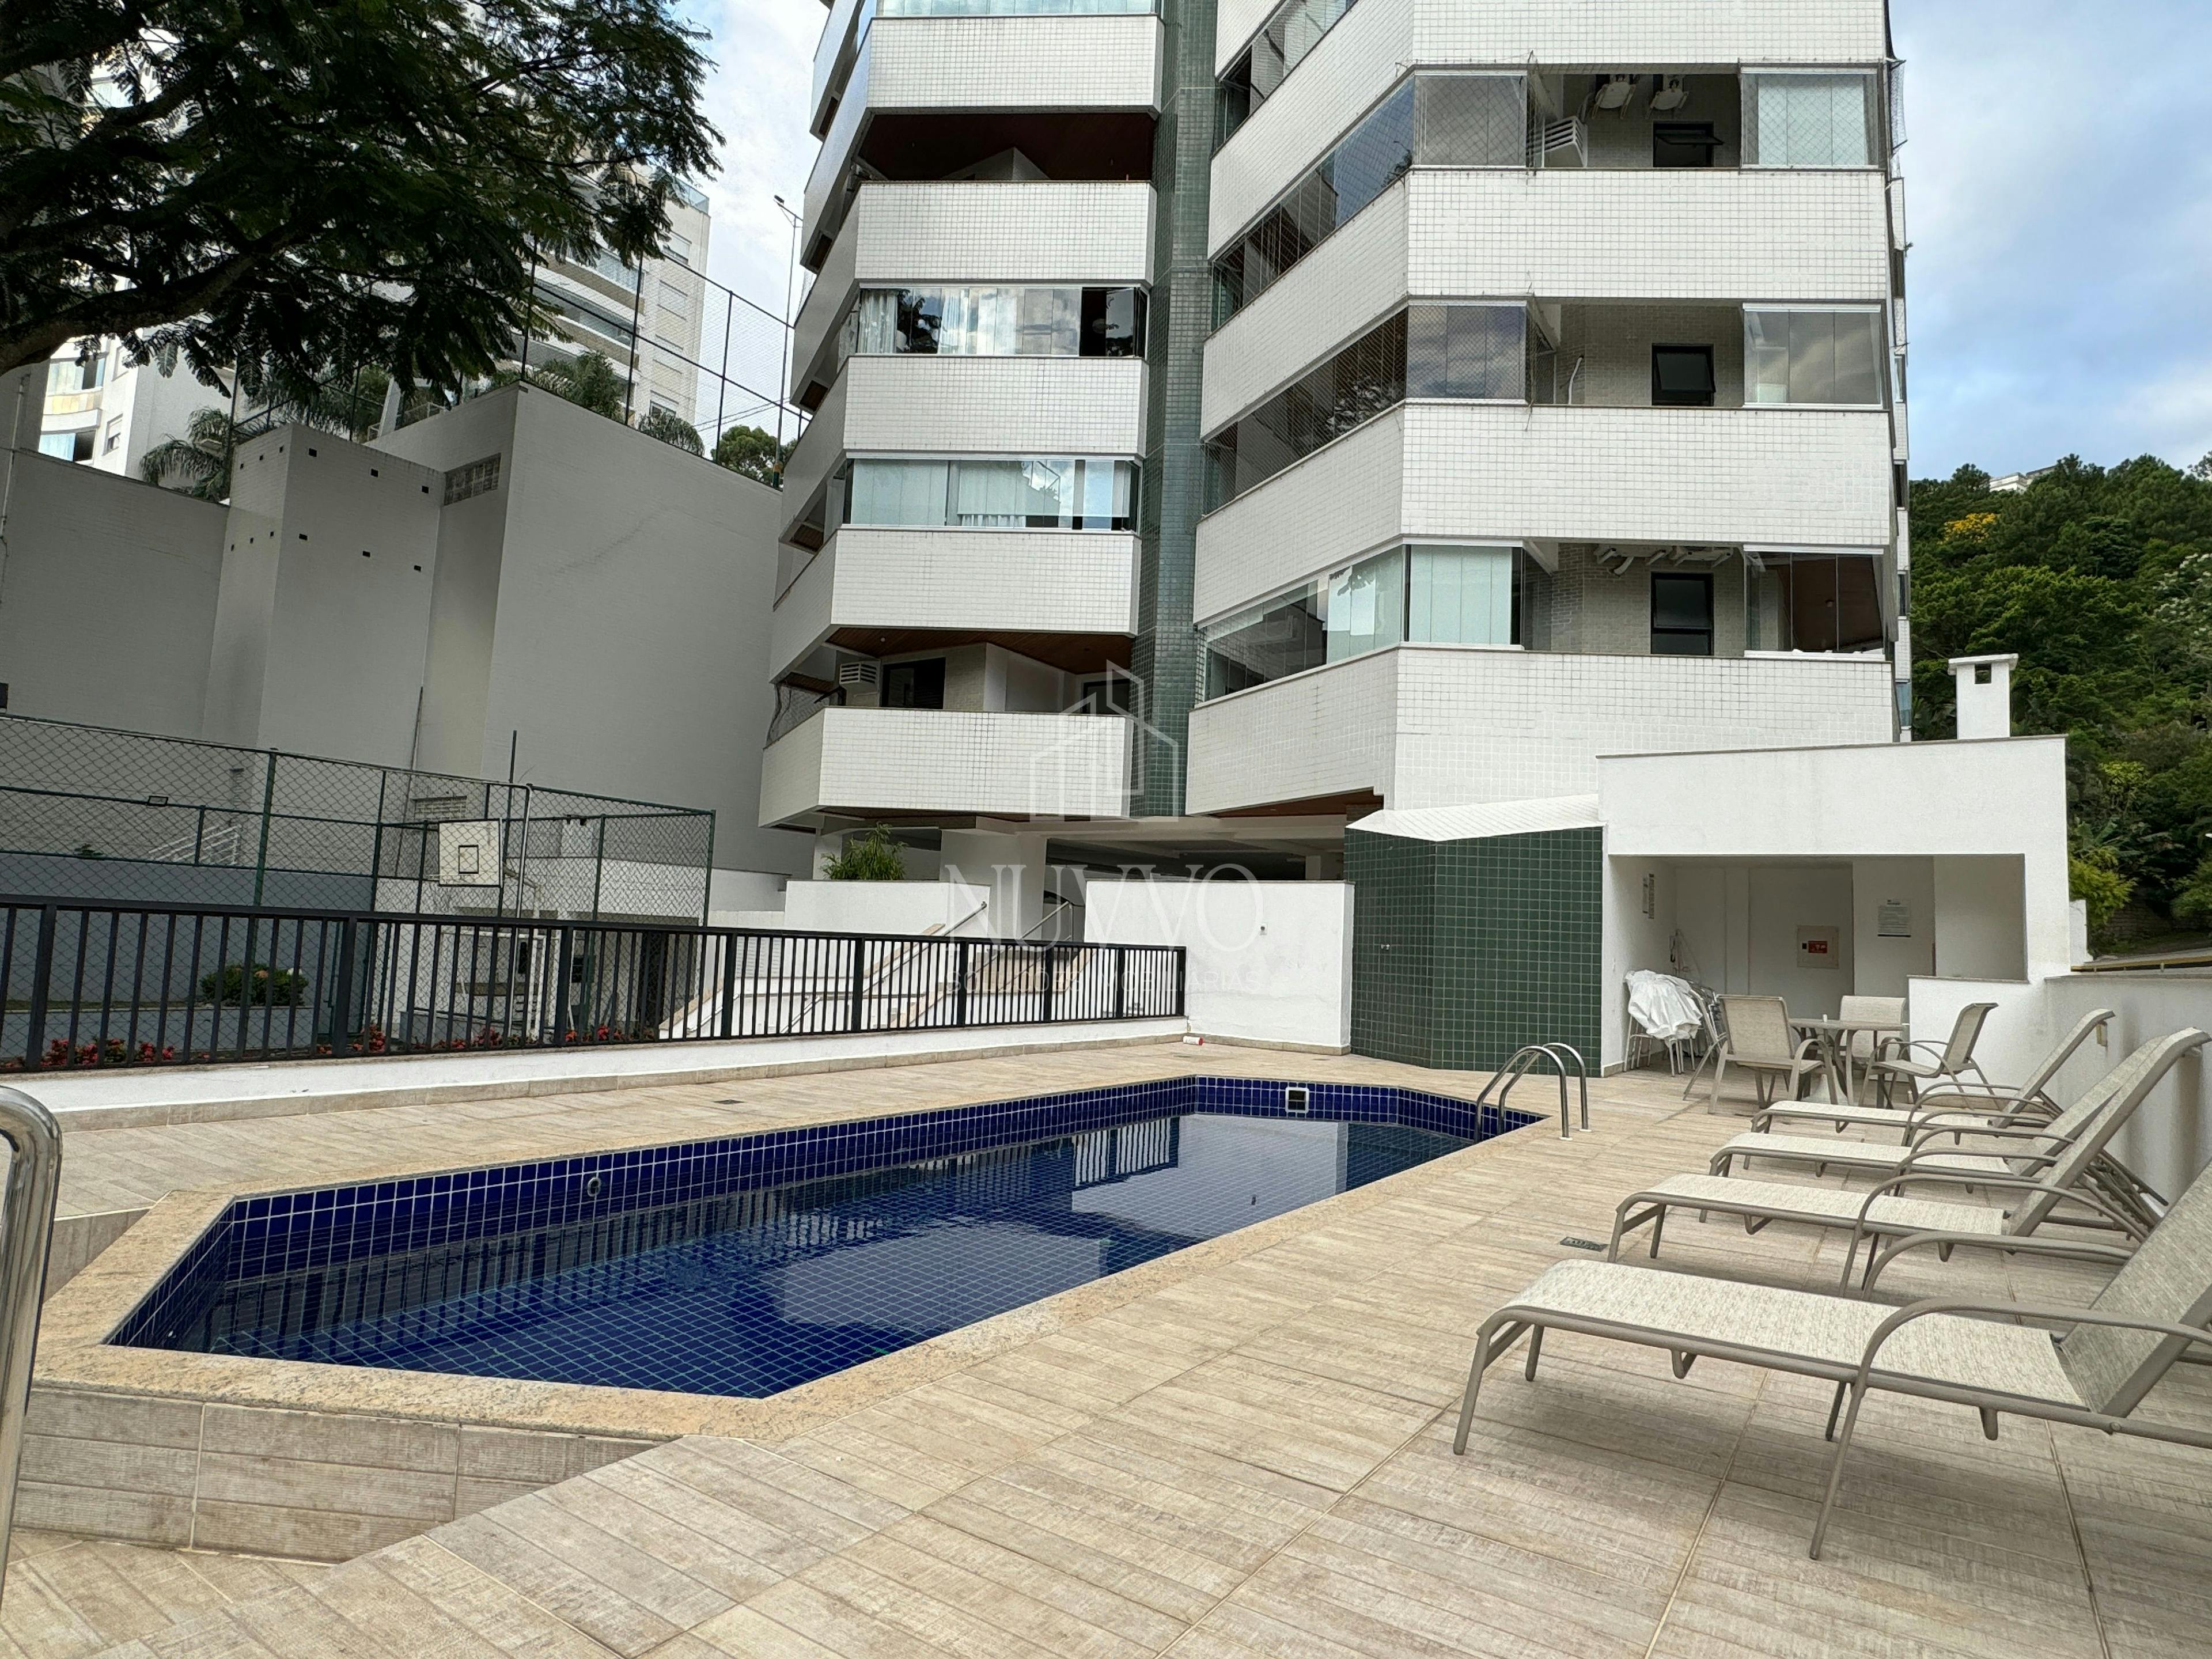 Apartamento à venda no bairro João Paulo em Florianópolis 